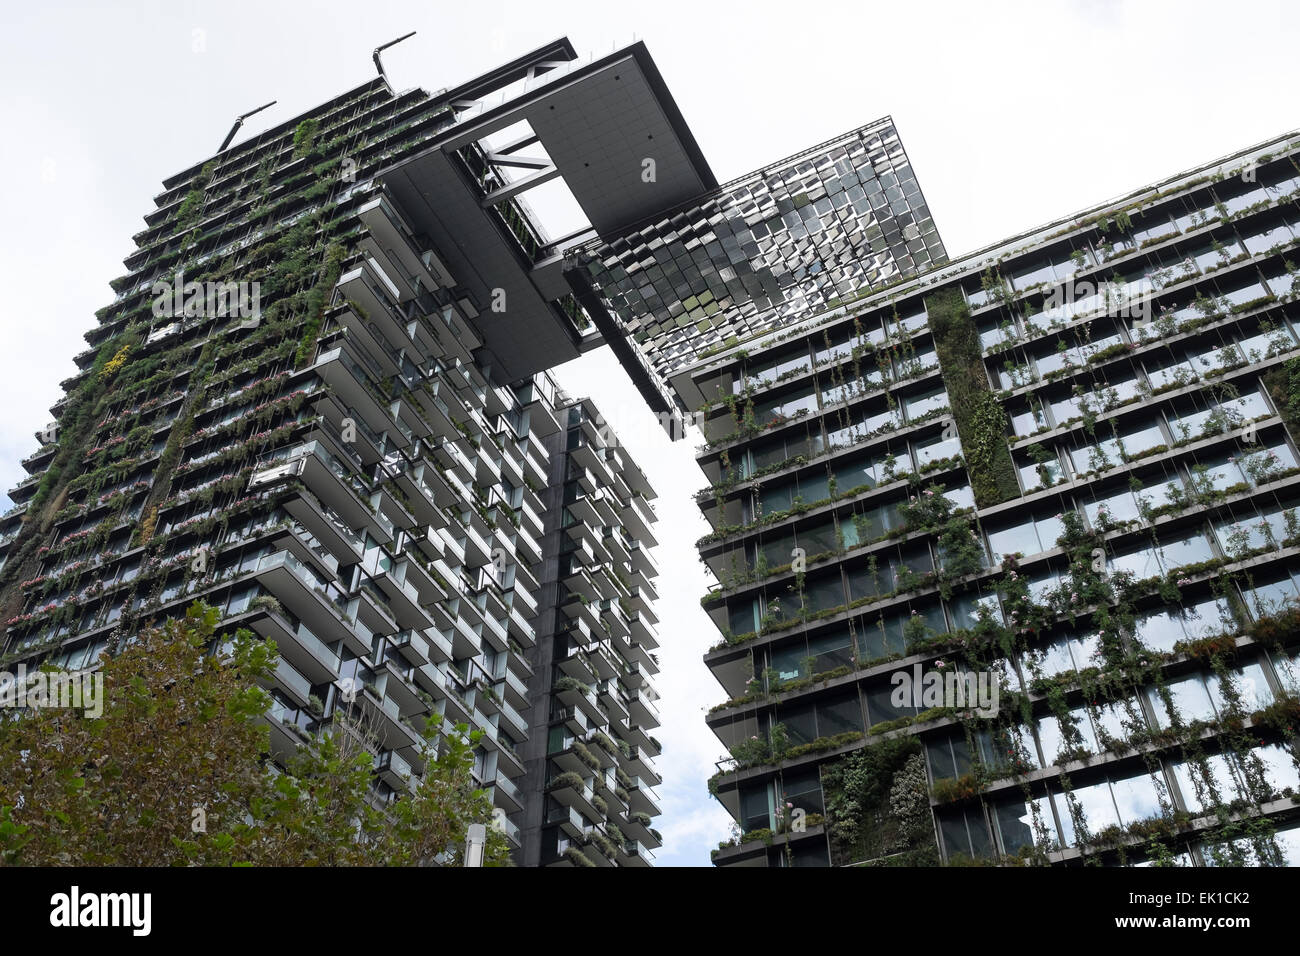 Ein Central Park, Sydney Australien. Architekt: Jean Nouvel. Stockfoto